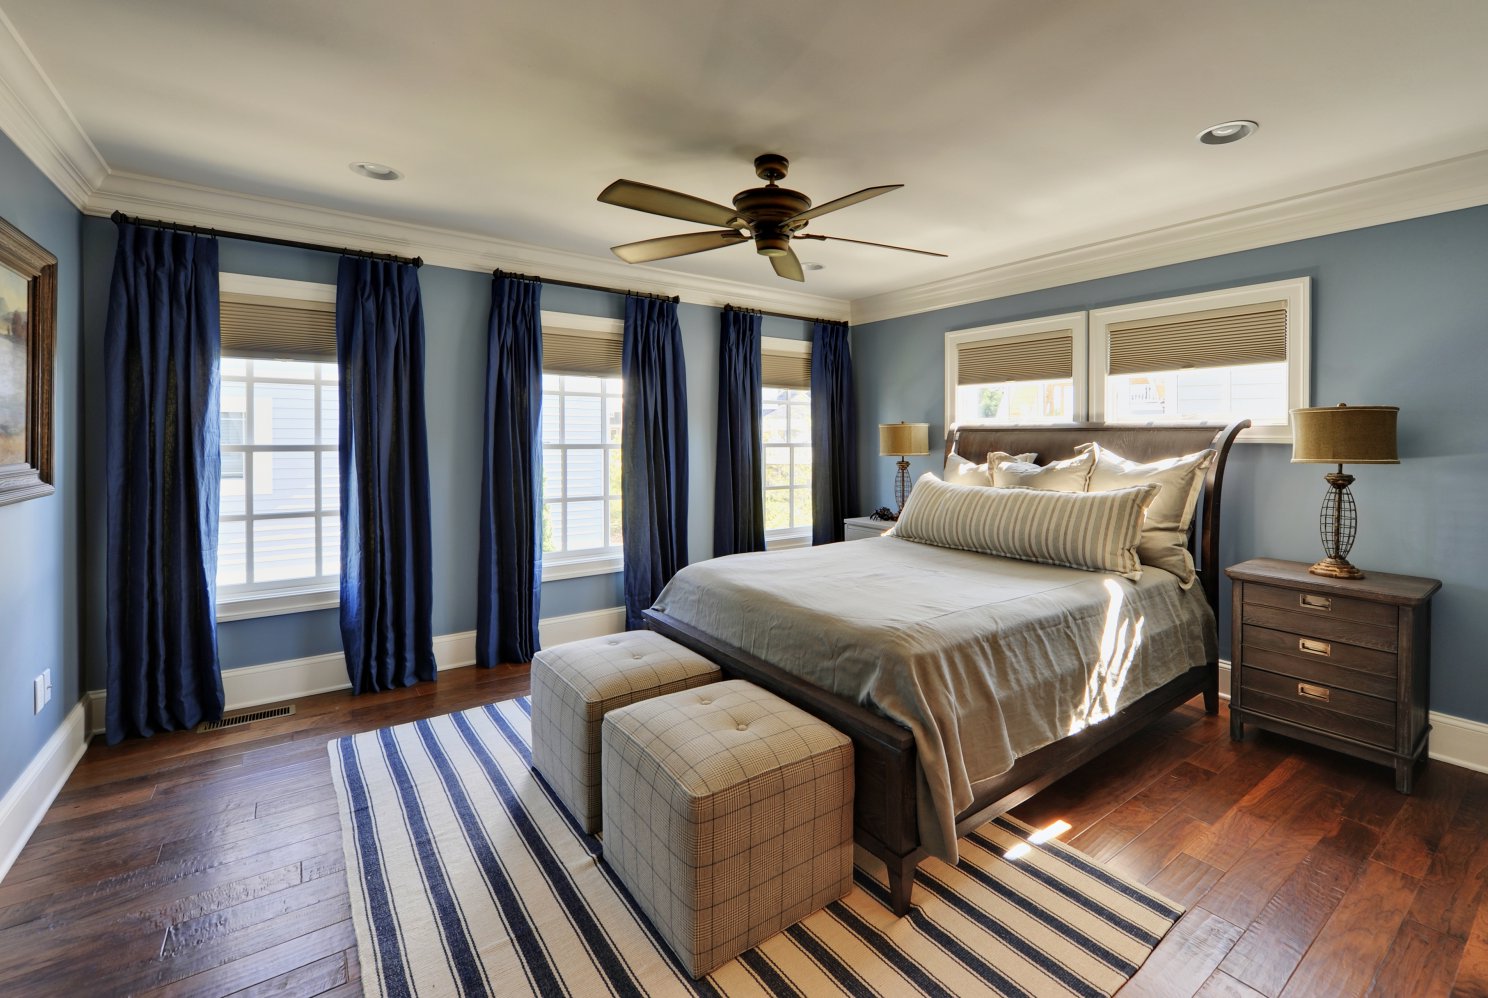 Спальня в голубых тонах - оригинальные идеи интерьера, возможные сочетания цветов в дизайне + фото